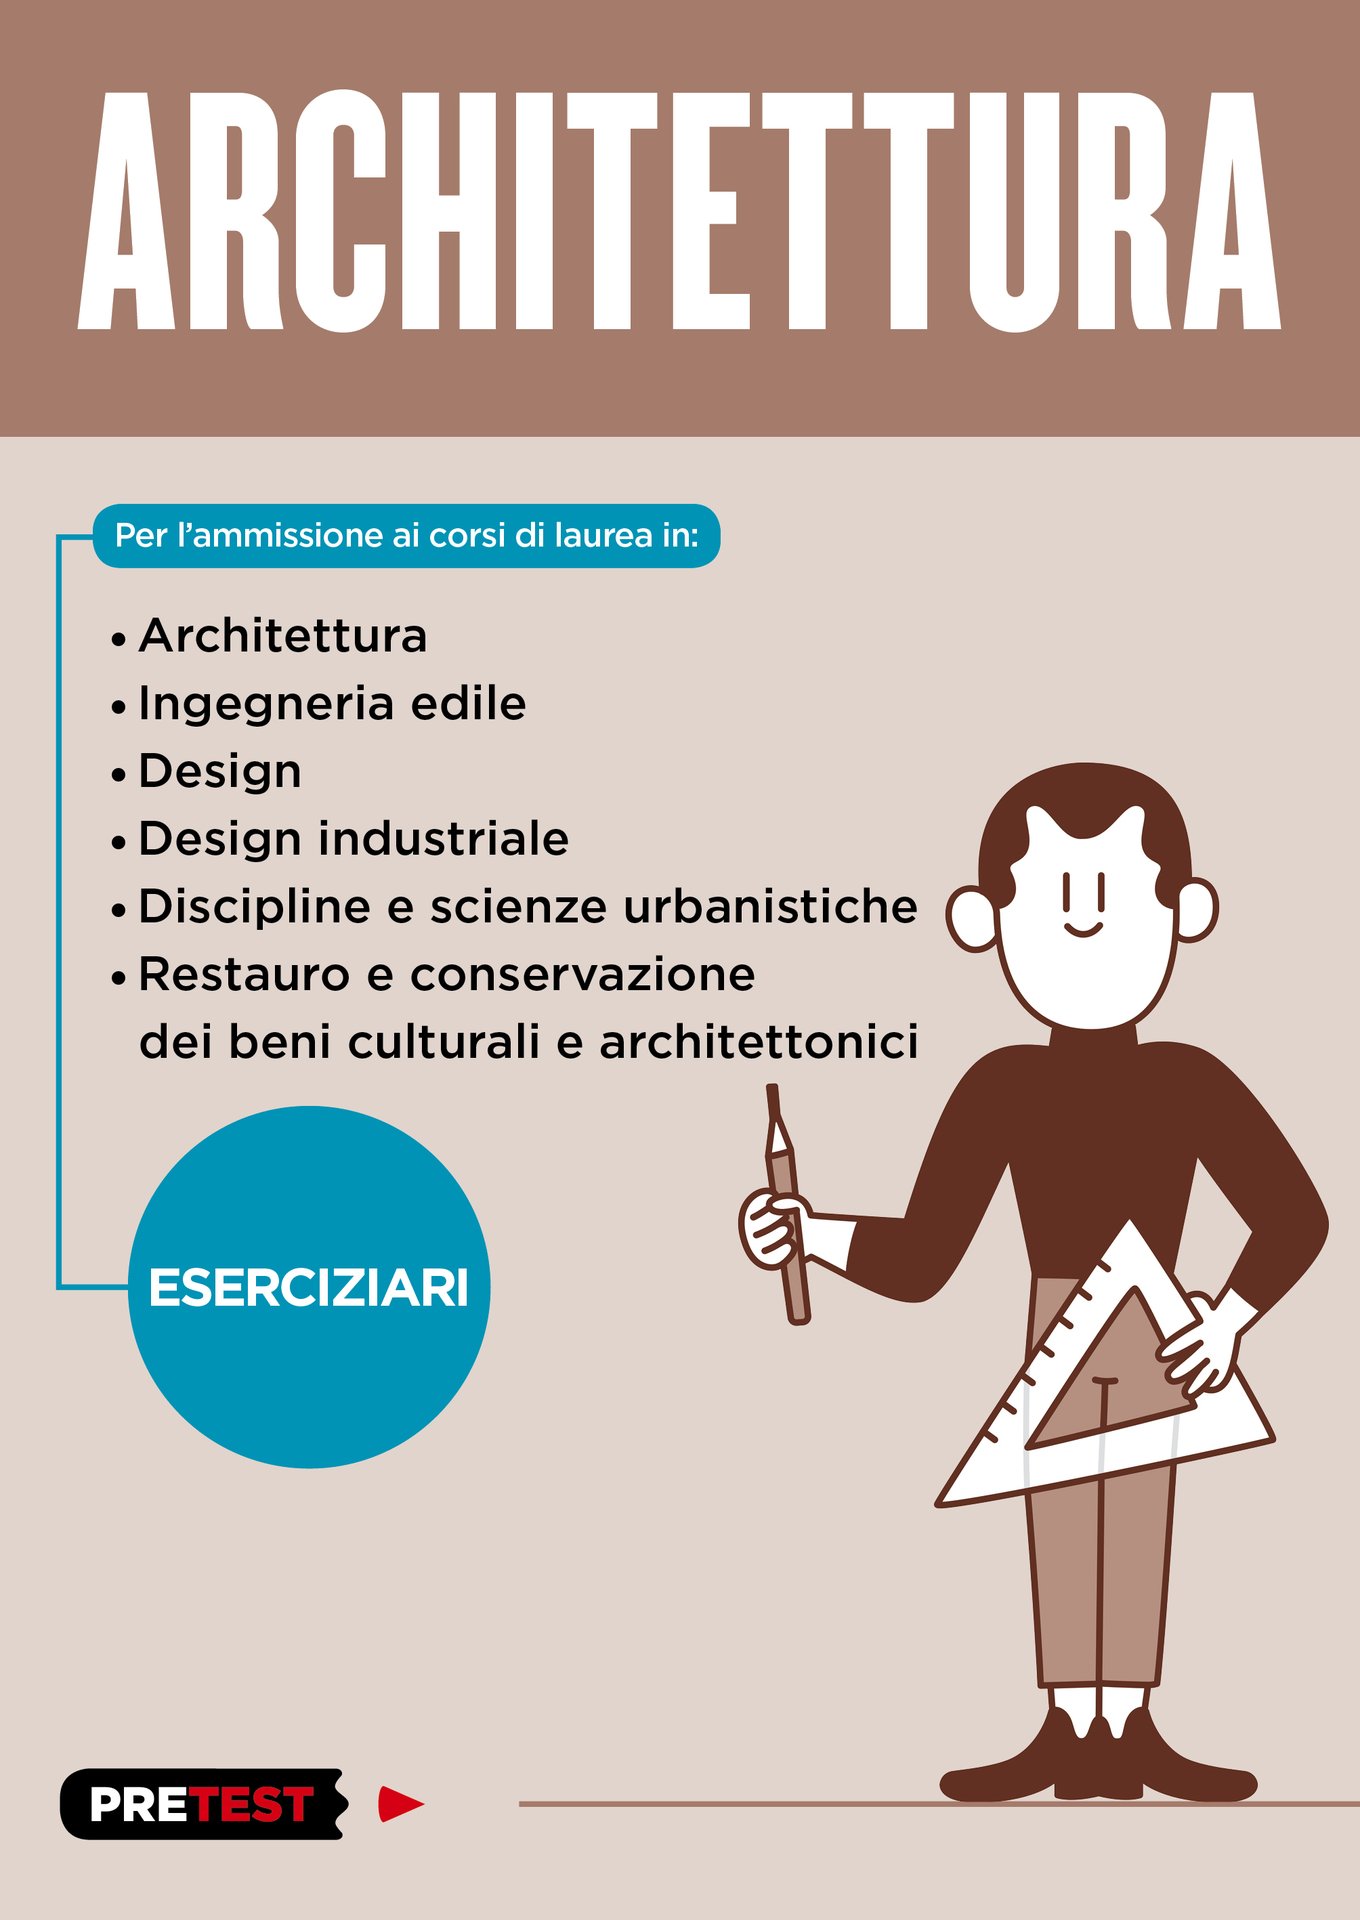 ARCHITETTURA. Architettura, ingegneria civile etc.